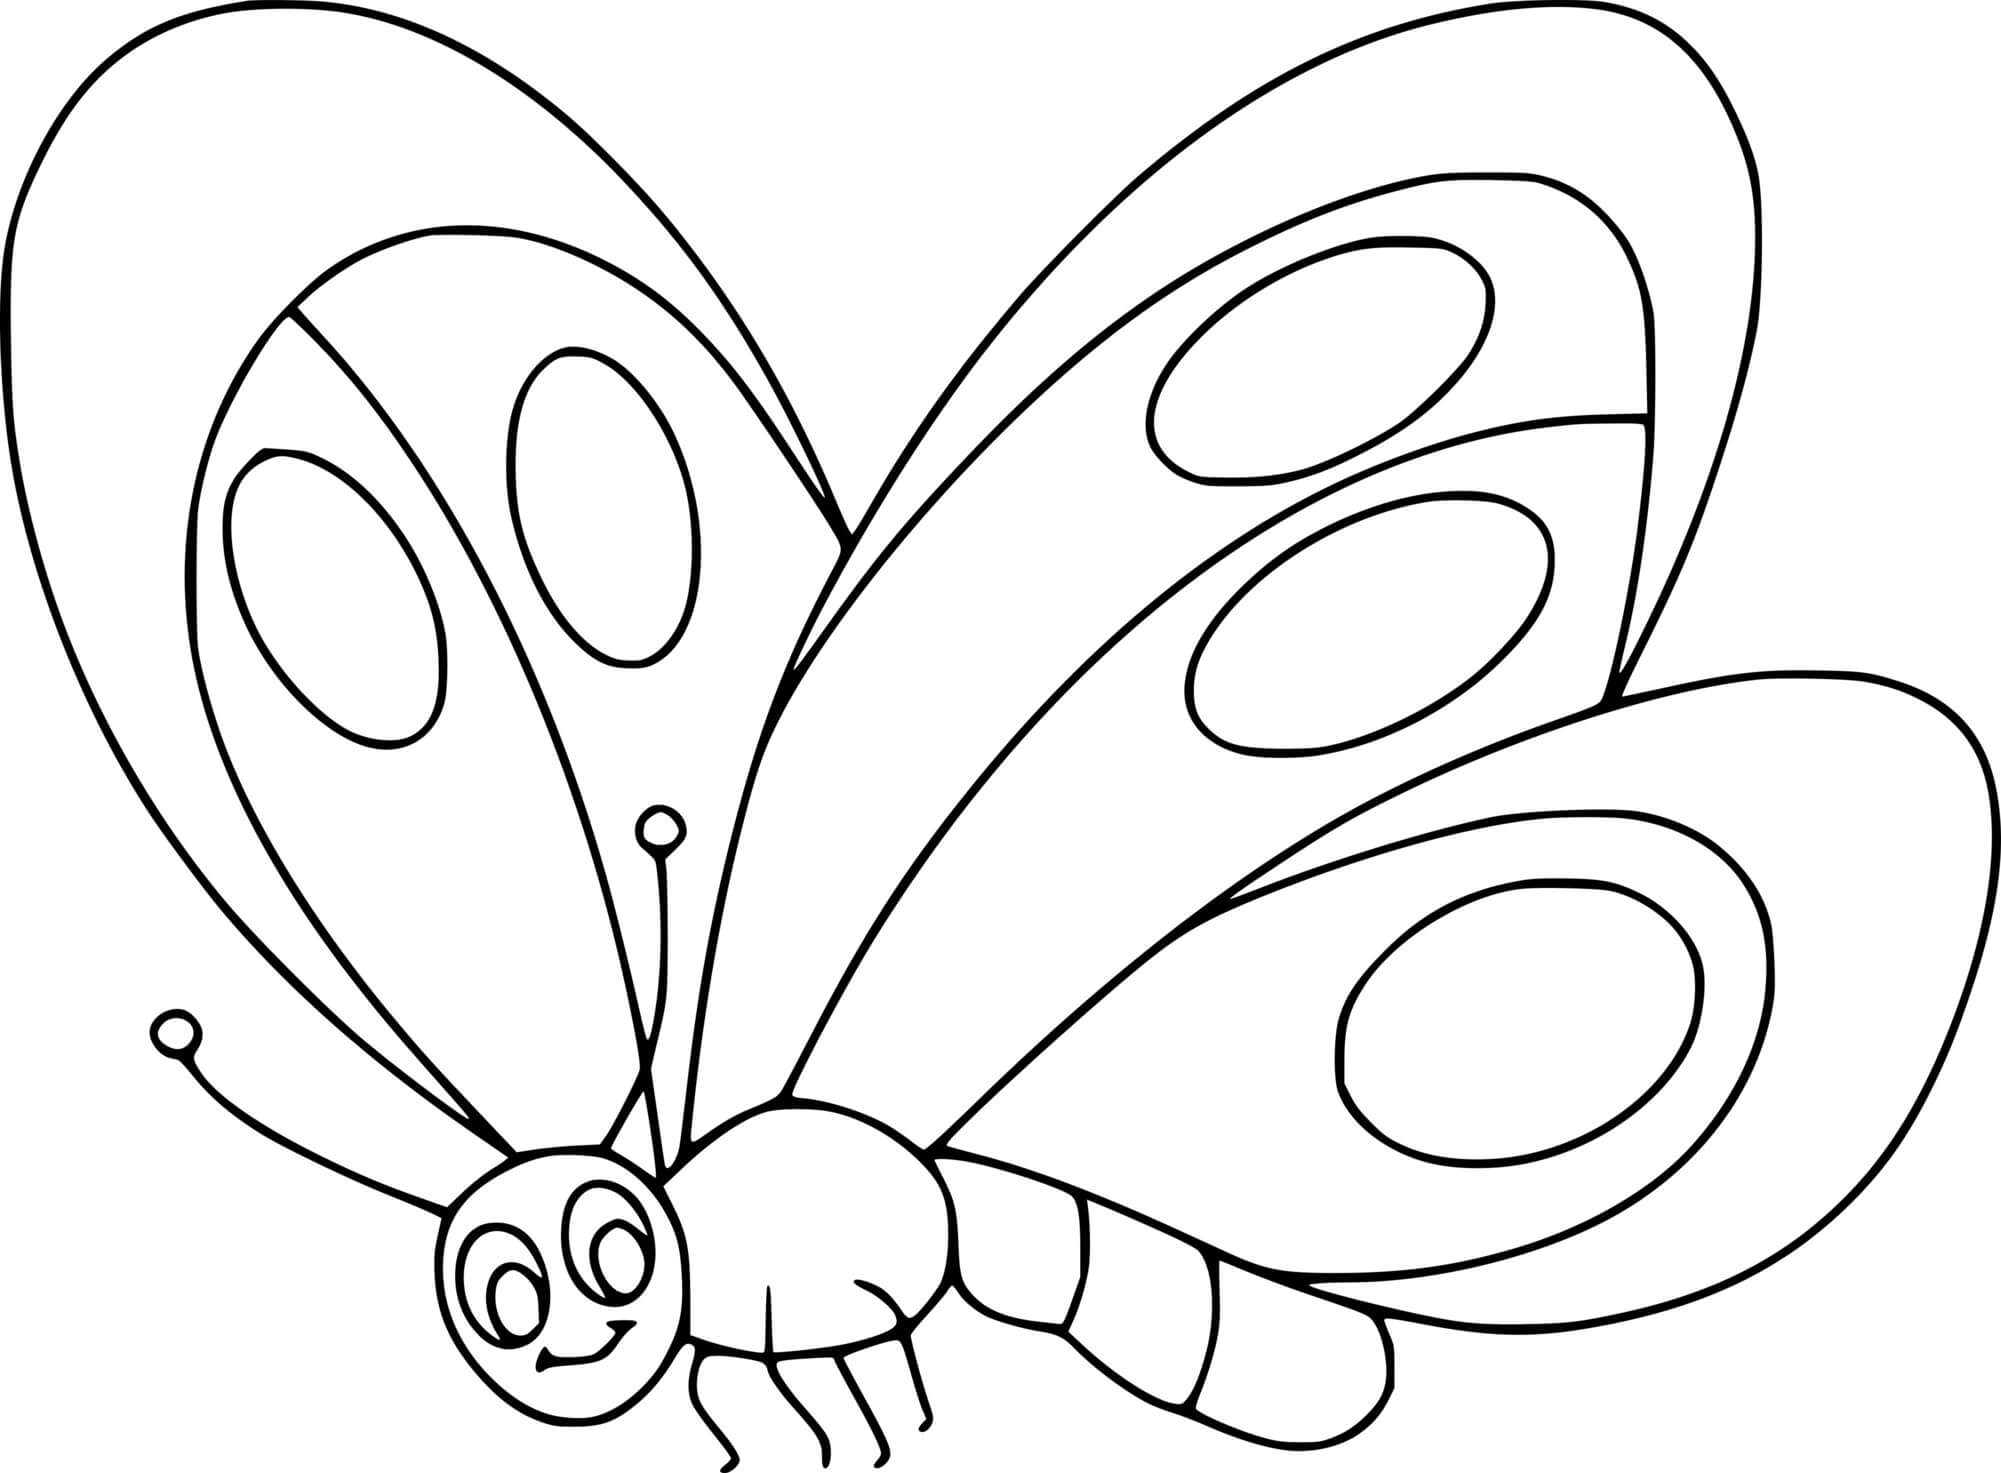 Раскраски для детей 4 5 бабочки. Бабочка раскраска для детей. Рисунок бабочки для раскрашивания. Бабочка раскраска для детей 3-4 лет. Бабочка раскраска для малышей.